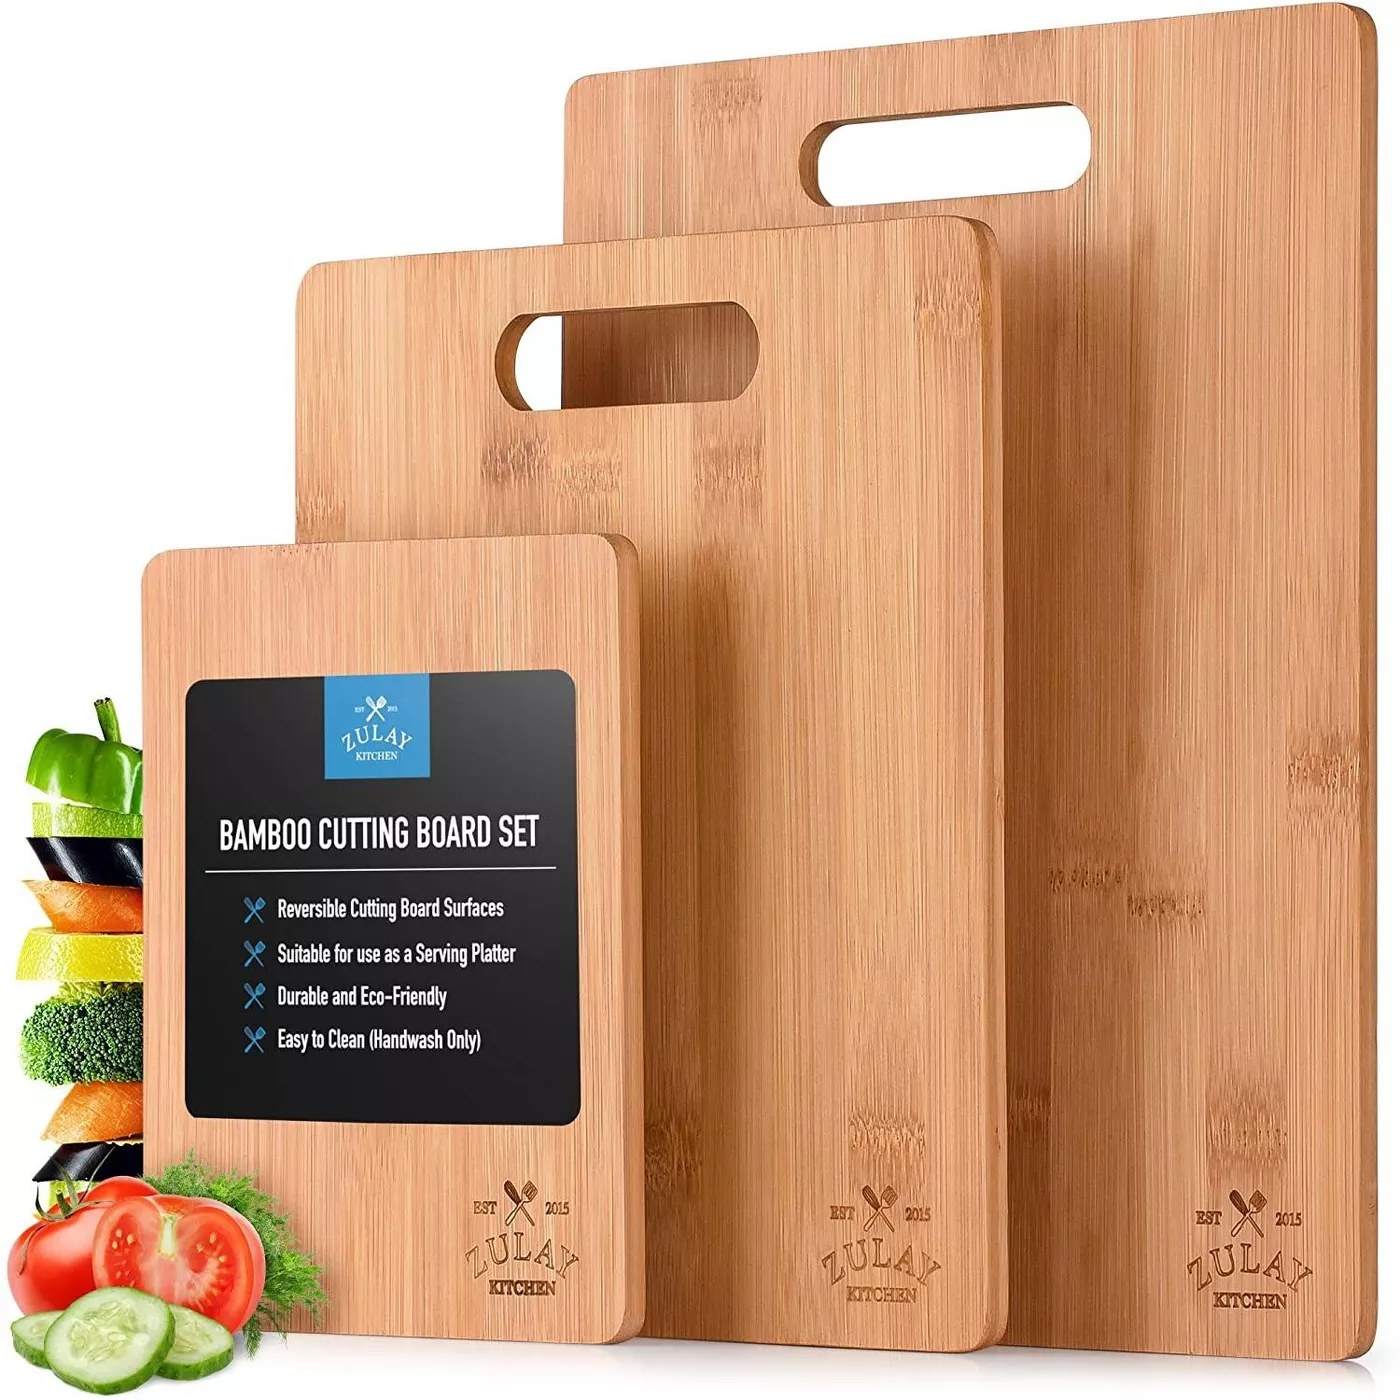 The Zulay Kitchen bamboo cutting board set